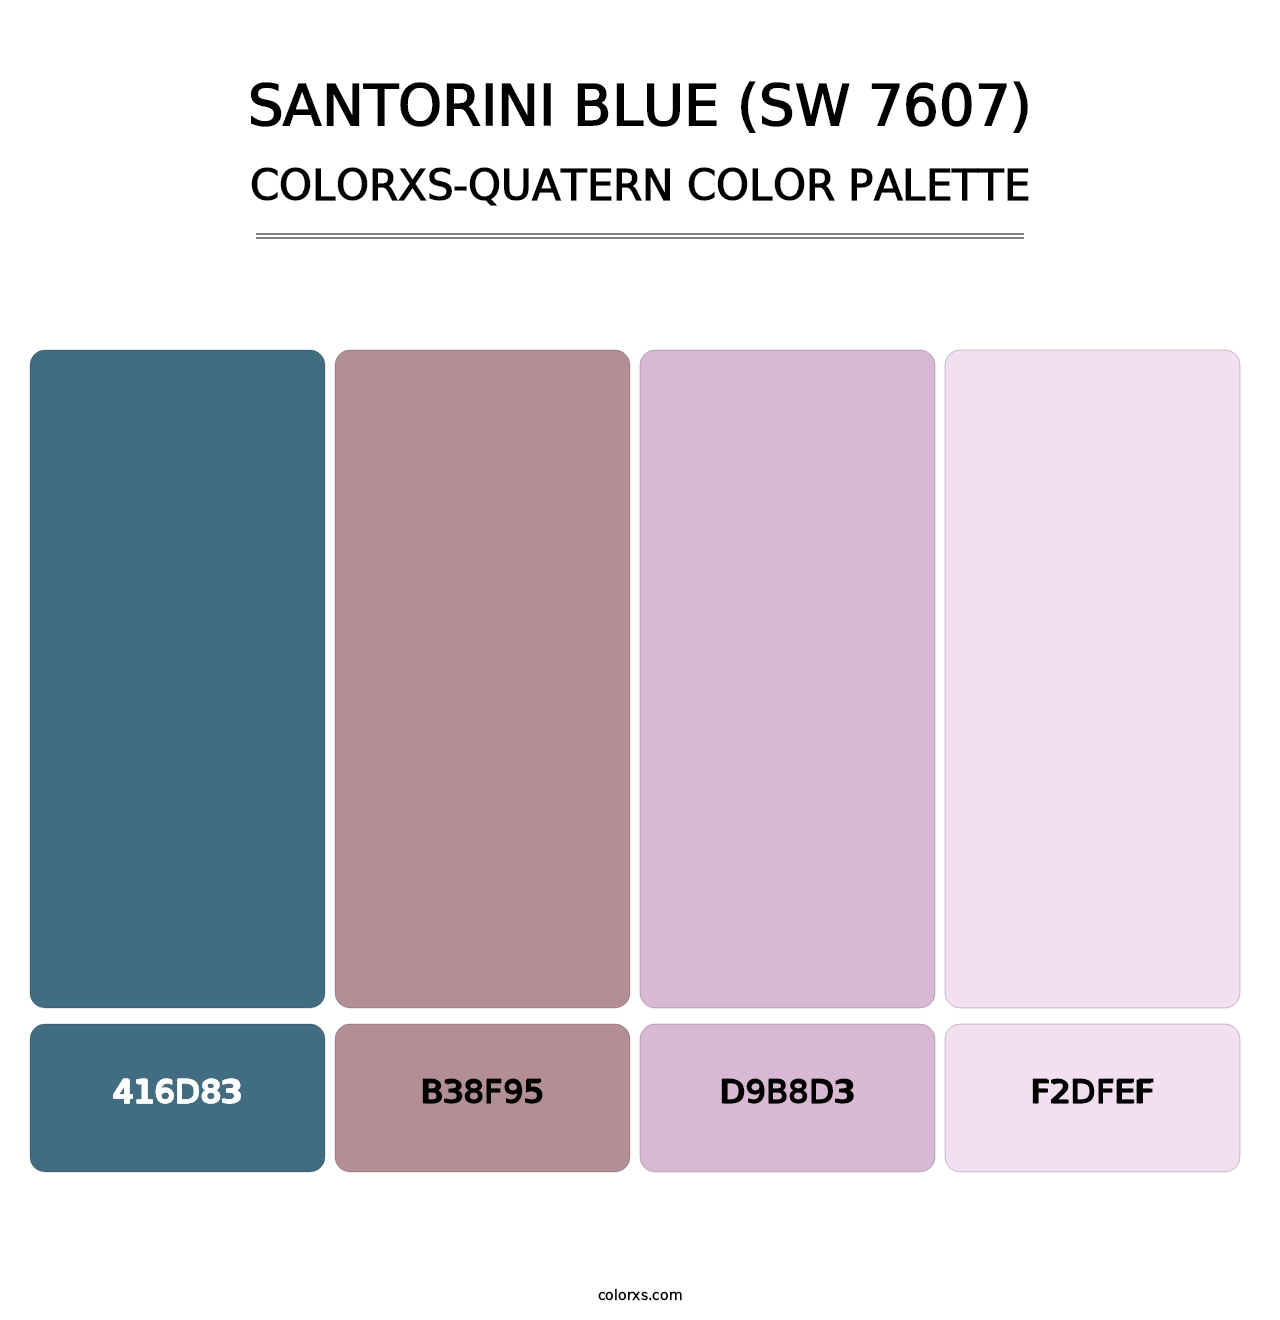 Santorini Blue (SW 7607) - Colorxs Quatern Palette